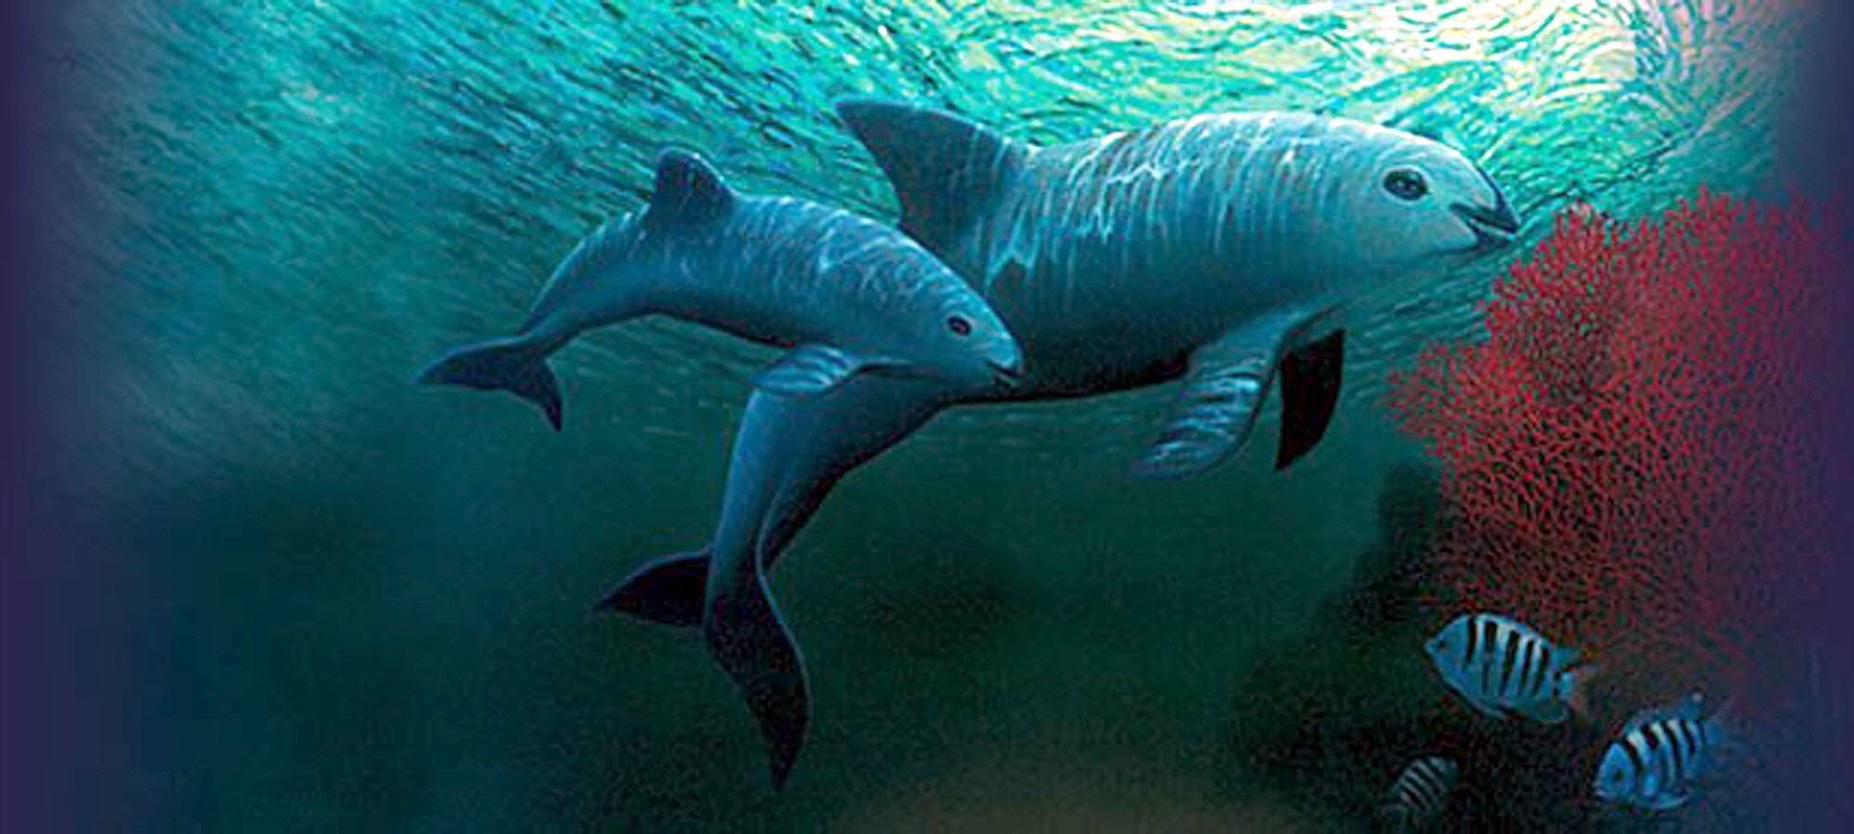 Semarnat anuncia cambios regulatorios para proteger a la vaquita marina y la totoaba